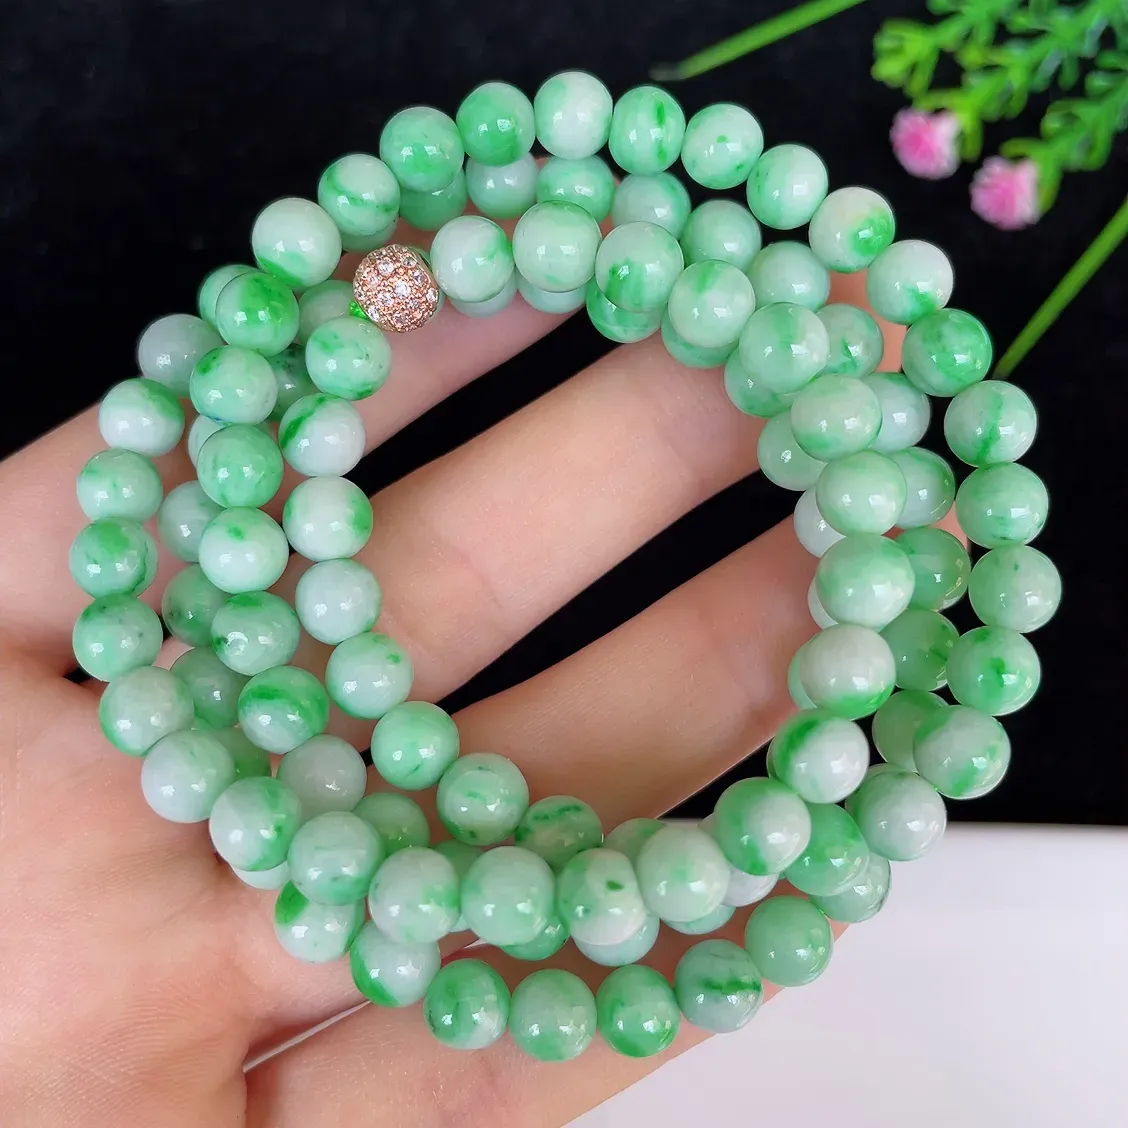 水润飘绿白底青圆珠翡翠项链#110-4519，天然翡翠A货，尺寸取一6.3mm，色泽鲜艳，绿色迷人，质地细腻，佩戴效果佳！！